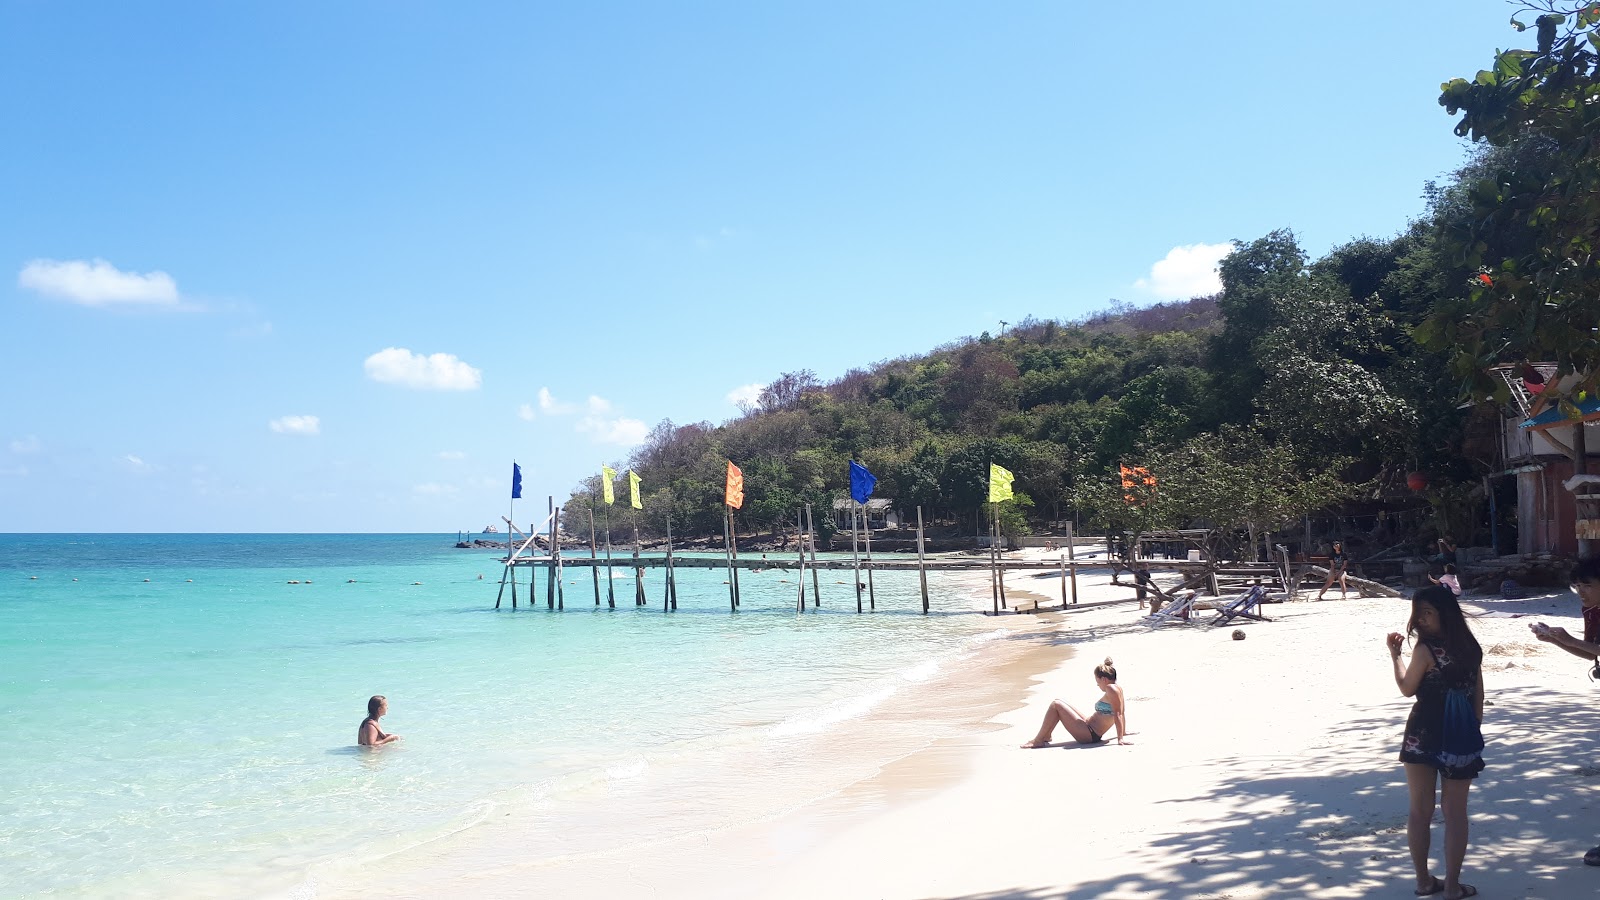 Fotografie cu Wai Beach II - locul popular printre cunoscătorii de relaxare